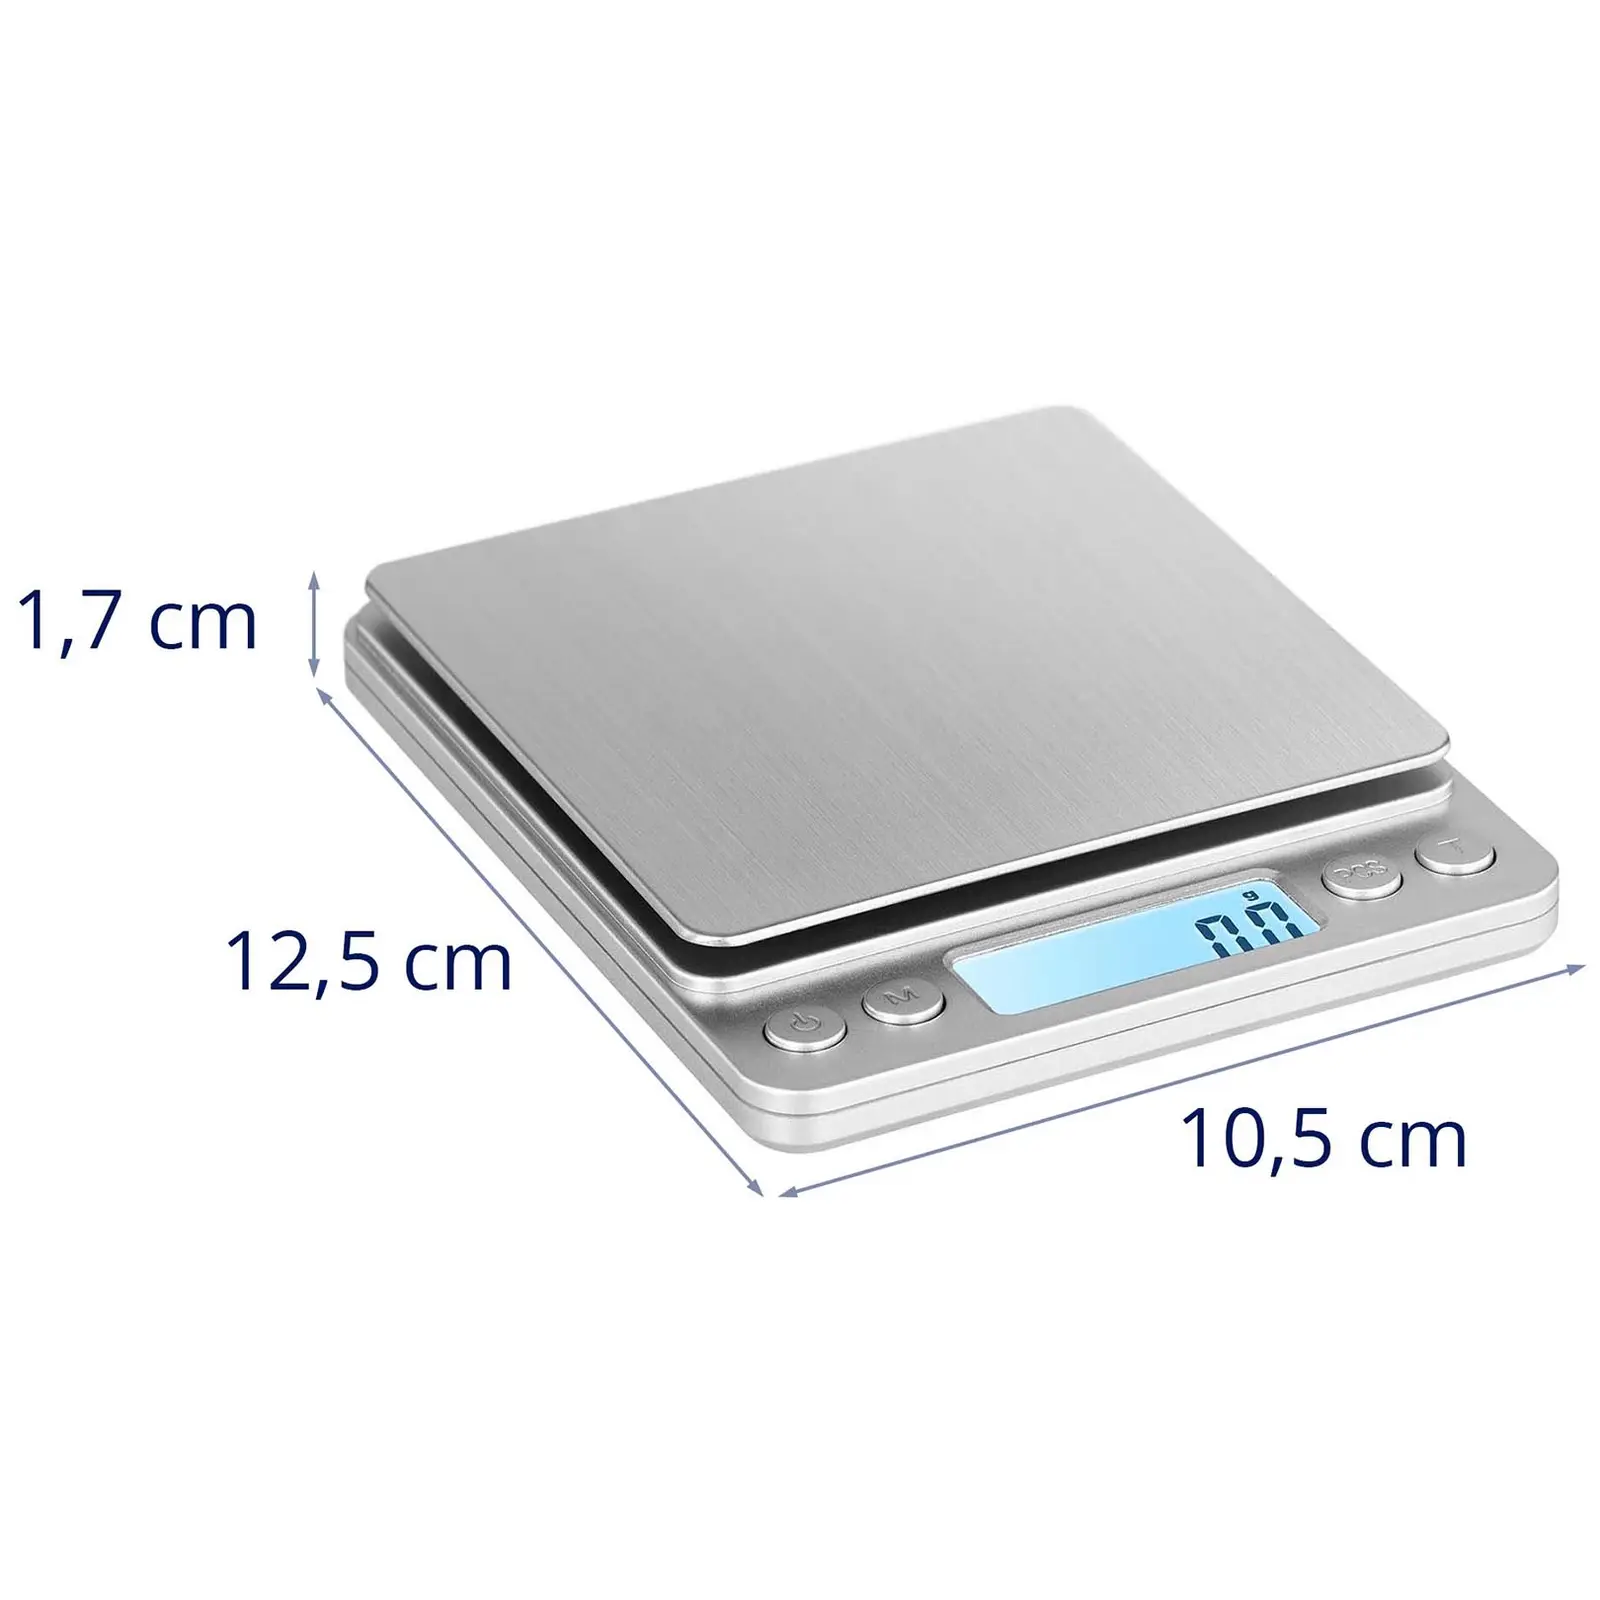 Balanza de mesa digital - 3 kg / 0,1 g